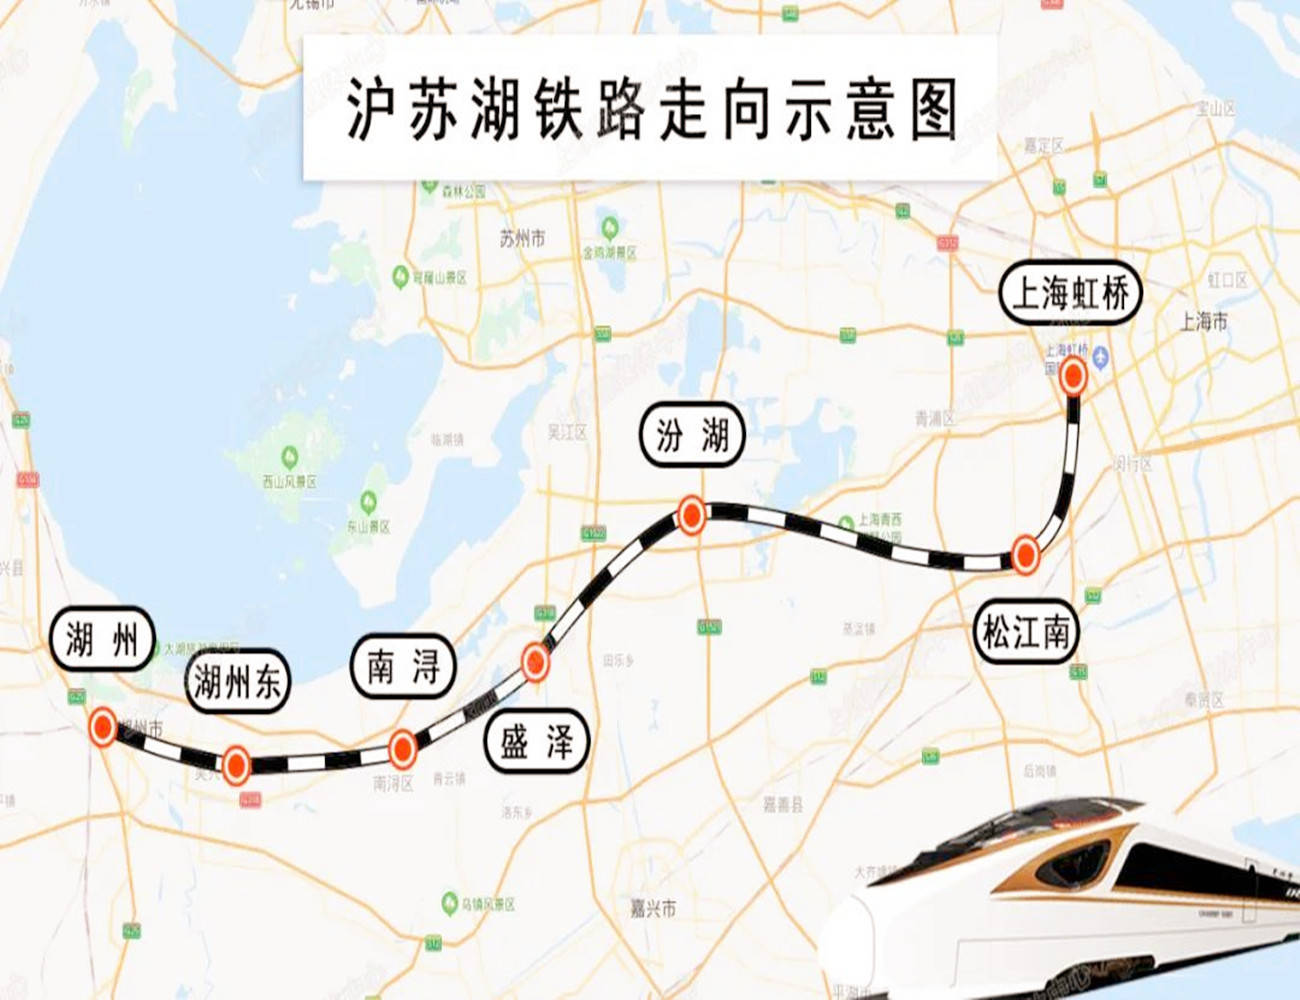 原创苏州在建的一座高铁站,站台规模2台4线,未来沪苏湖铁路将经过